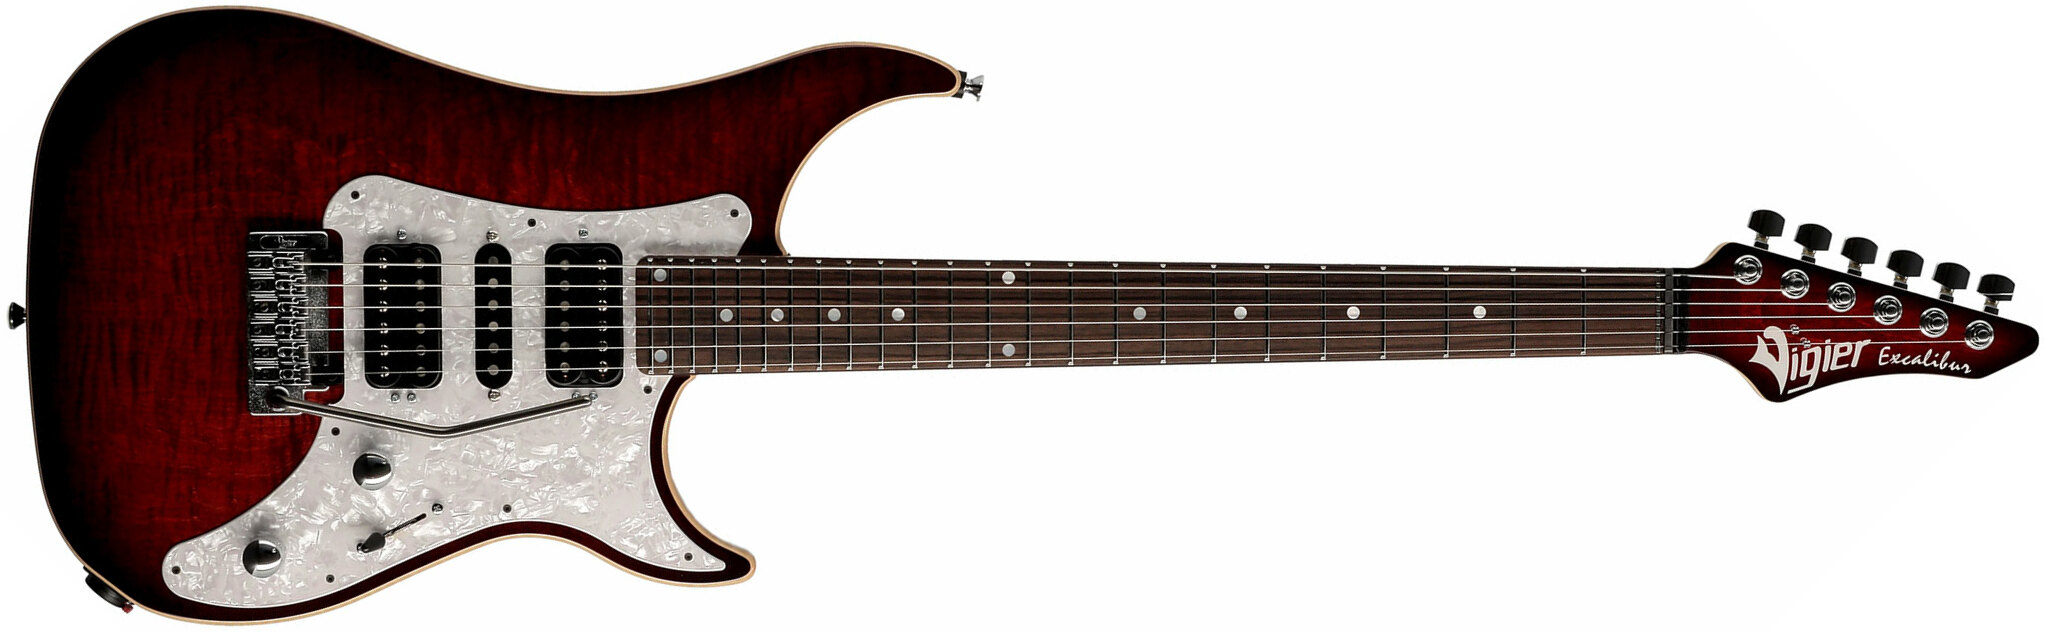 Vigier Excalibur Speciaal Hsh Trem Rw - Mysterious Red - Metalen elektrische gitaar - Main picture